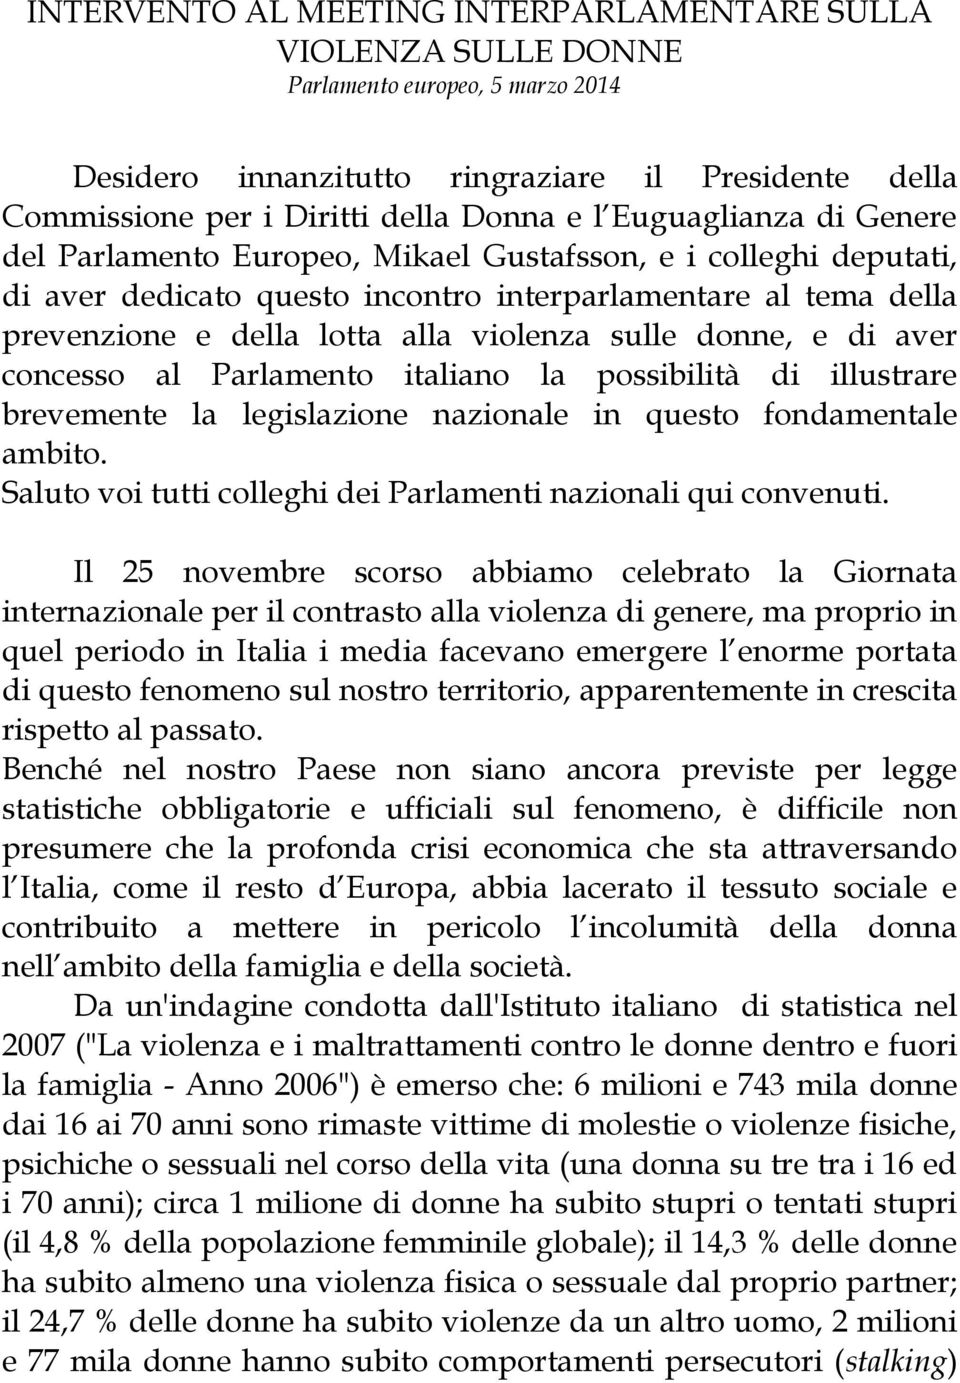 donne, e di aver concesso al Parlamento italiano la possibilità di illustrare brevemente la legislazione nazionale in questo fondamentale ambito.